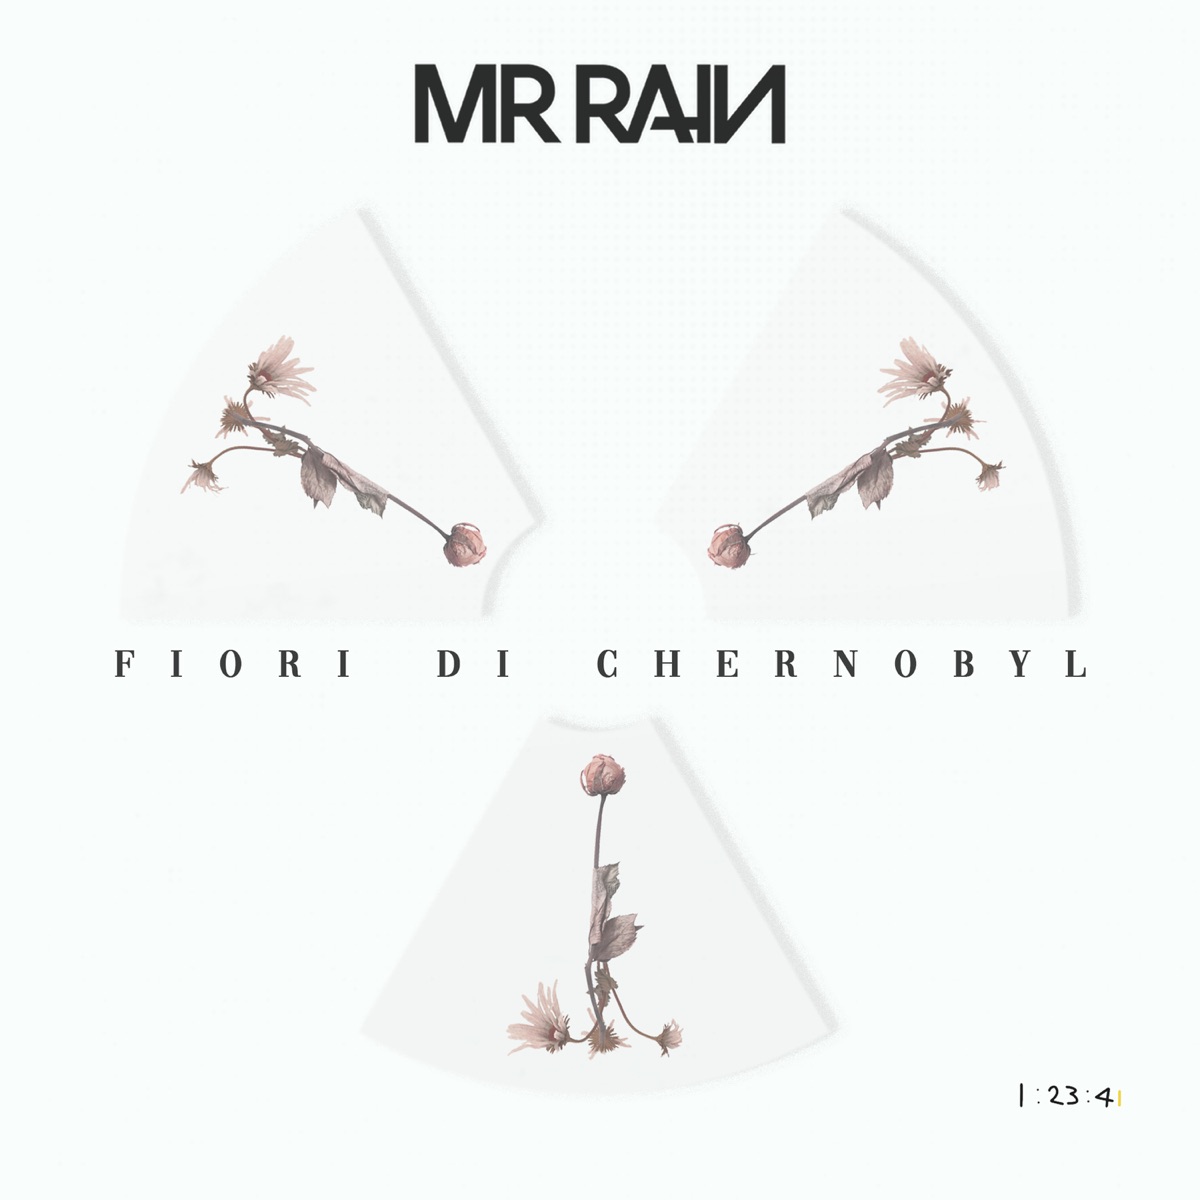 Fiori di Chernobyl - Single di Mr.Rain su Apple Music